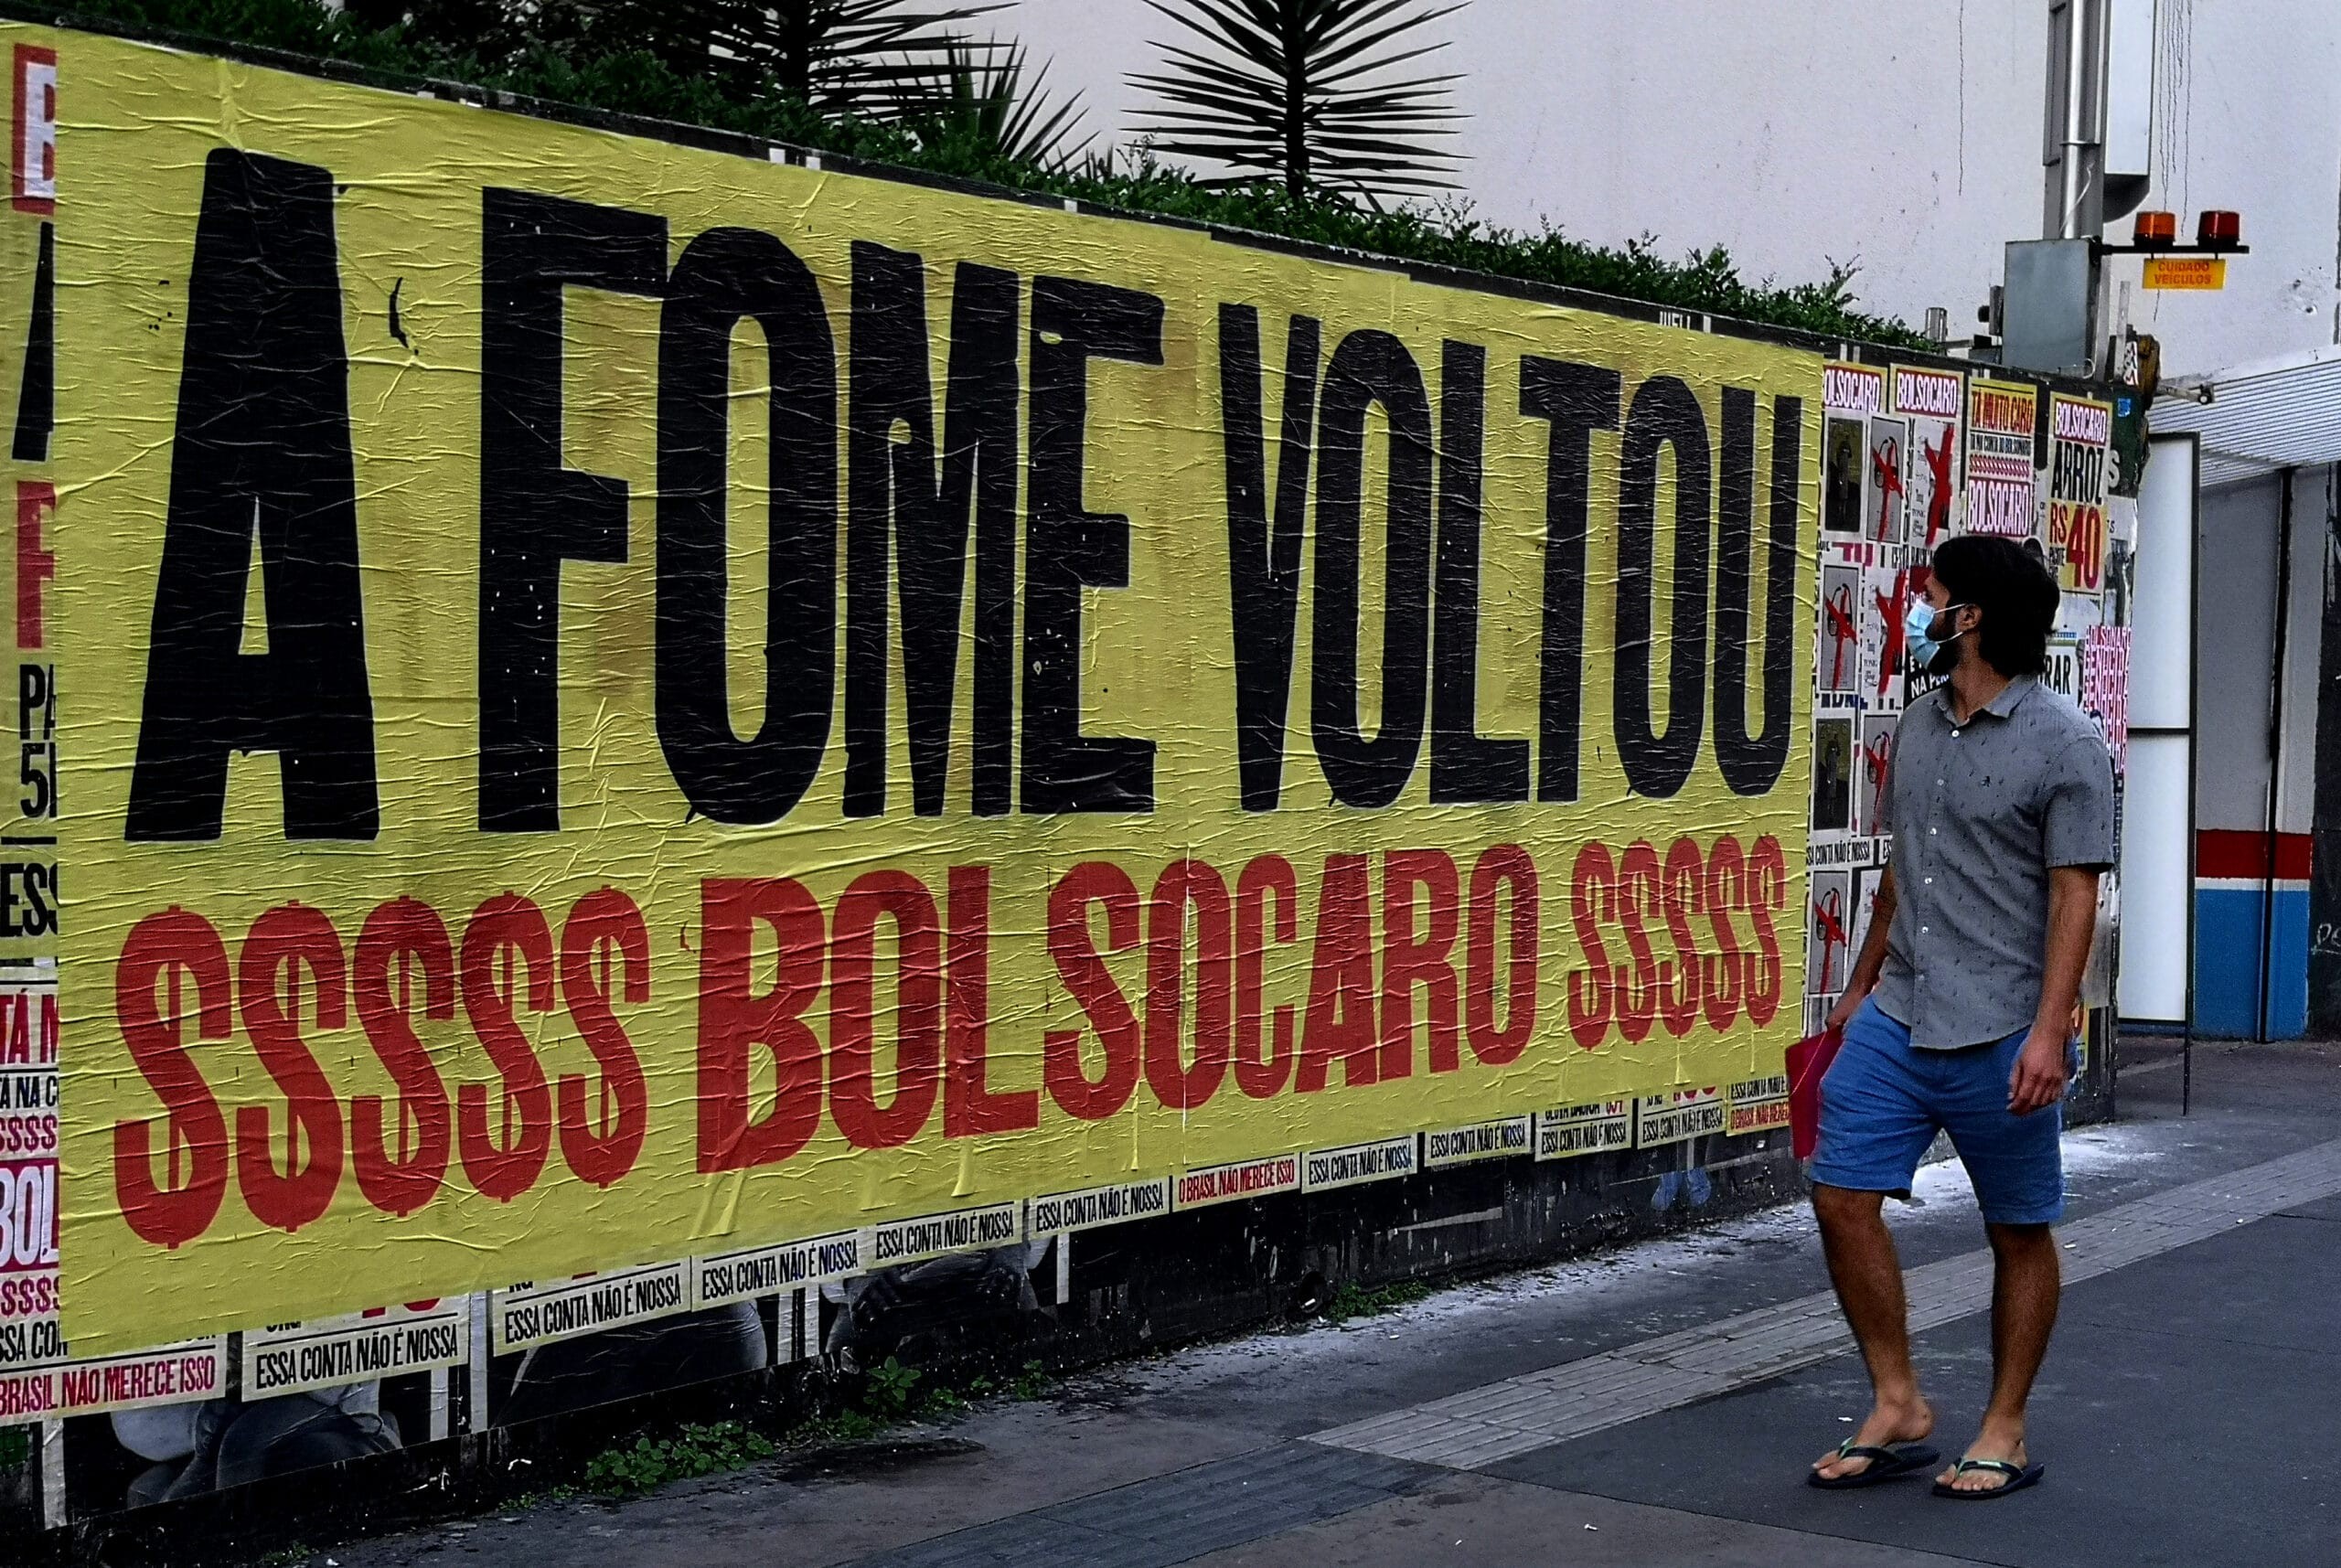  Insegurança alimentar aumentou de 36,6% em 2018 para 52% em 2020. Acima, lambe-lambe em muro na Avenida Paulista em protesto ao aumento da fome no país durante o governo de Jair Bolsonaro. (Foto: Roberto Parizotti)